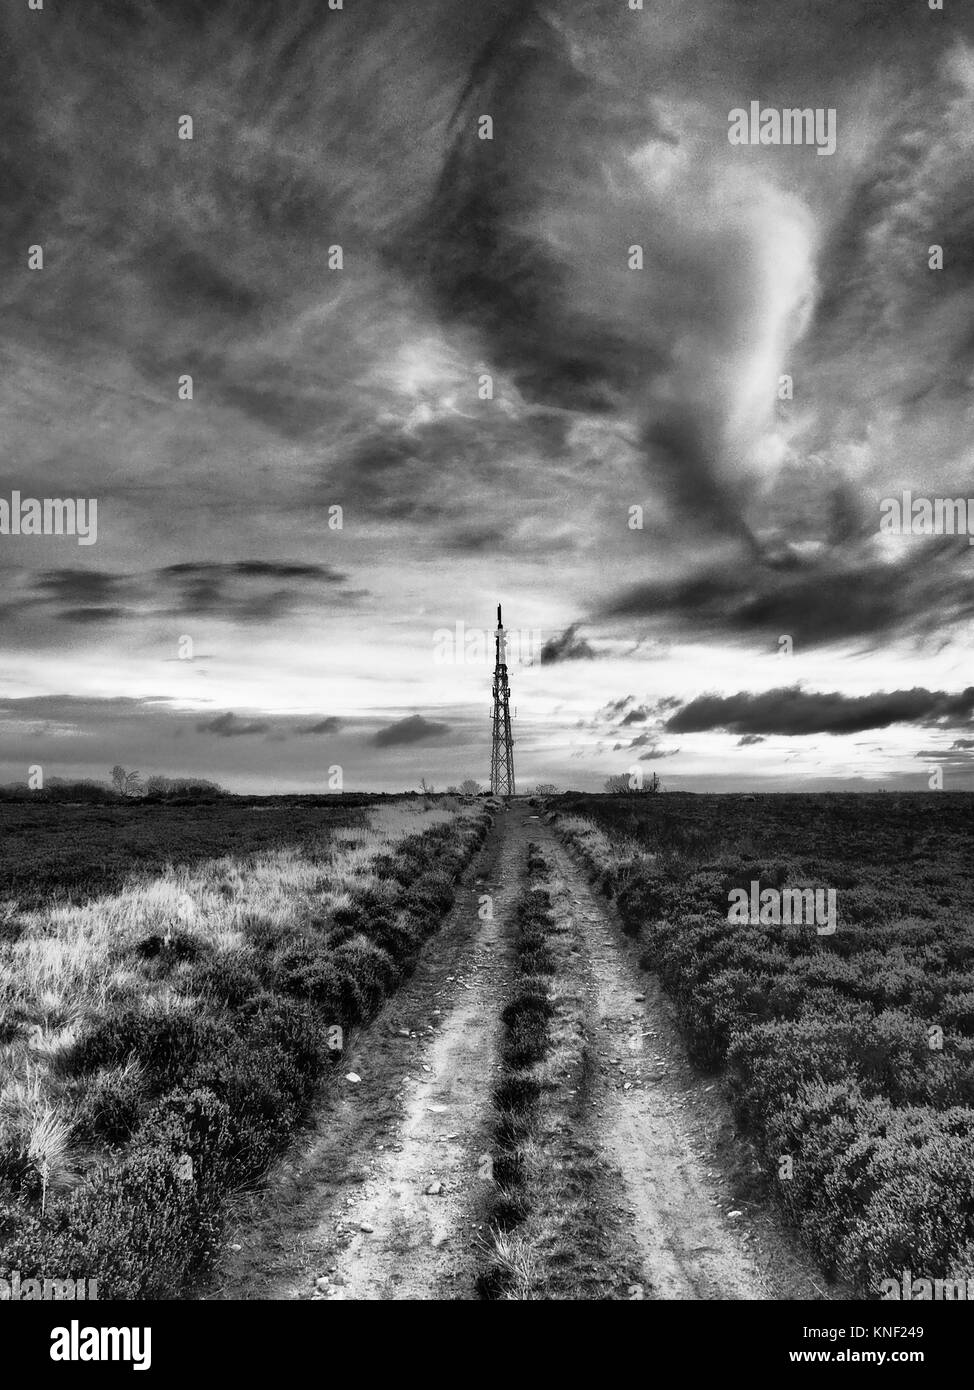 Sender Mast auf Mauren unter brütende Sky shot in Schwarz und Weiß Stockfoto